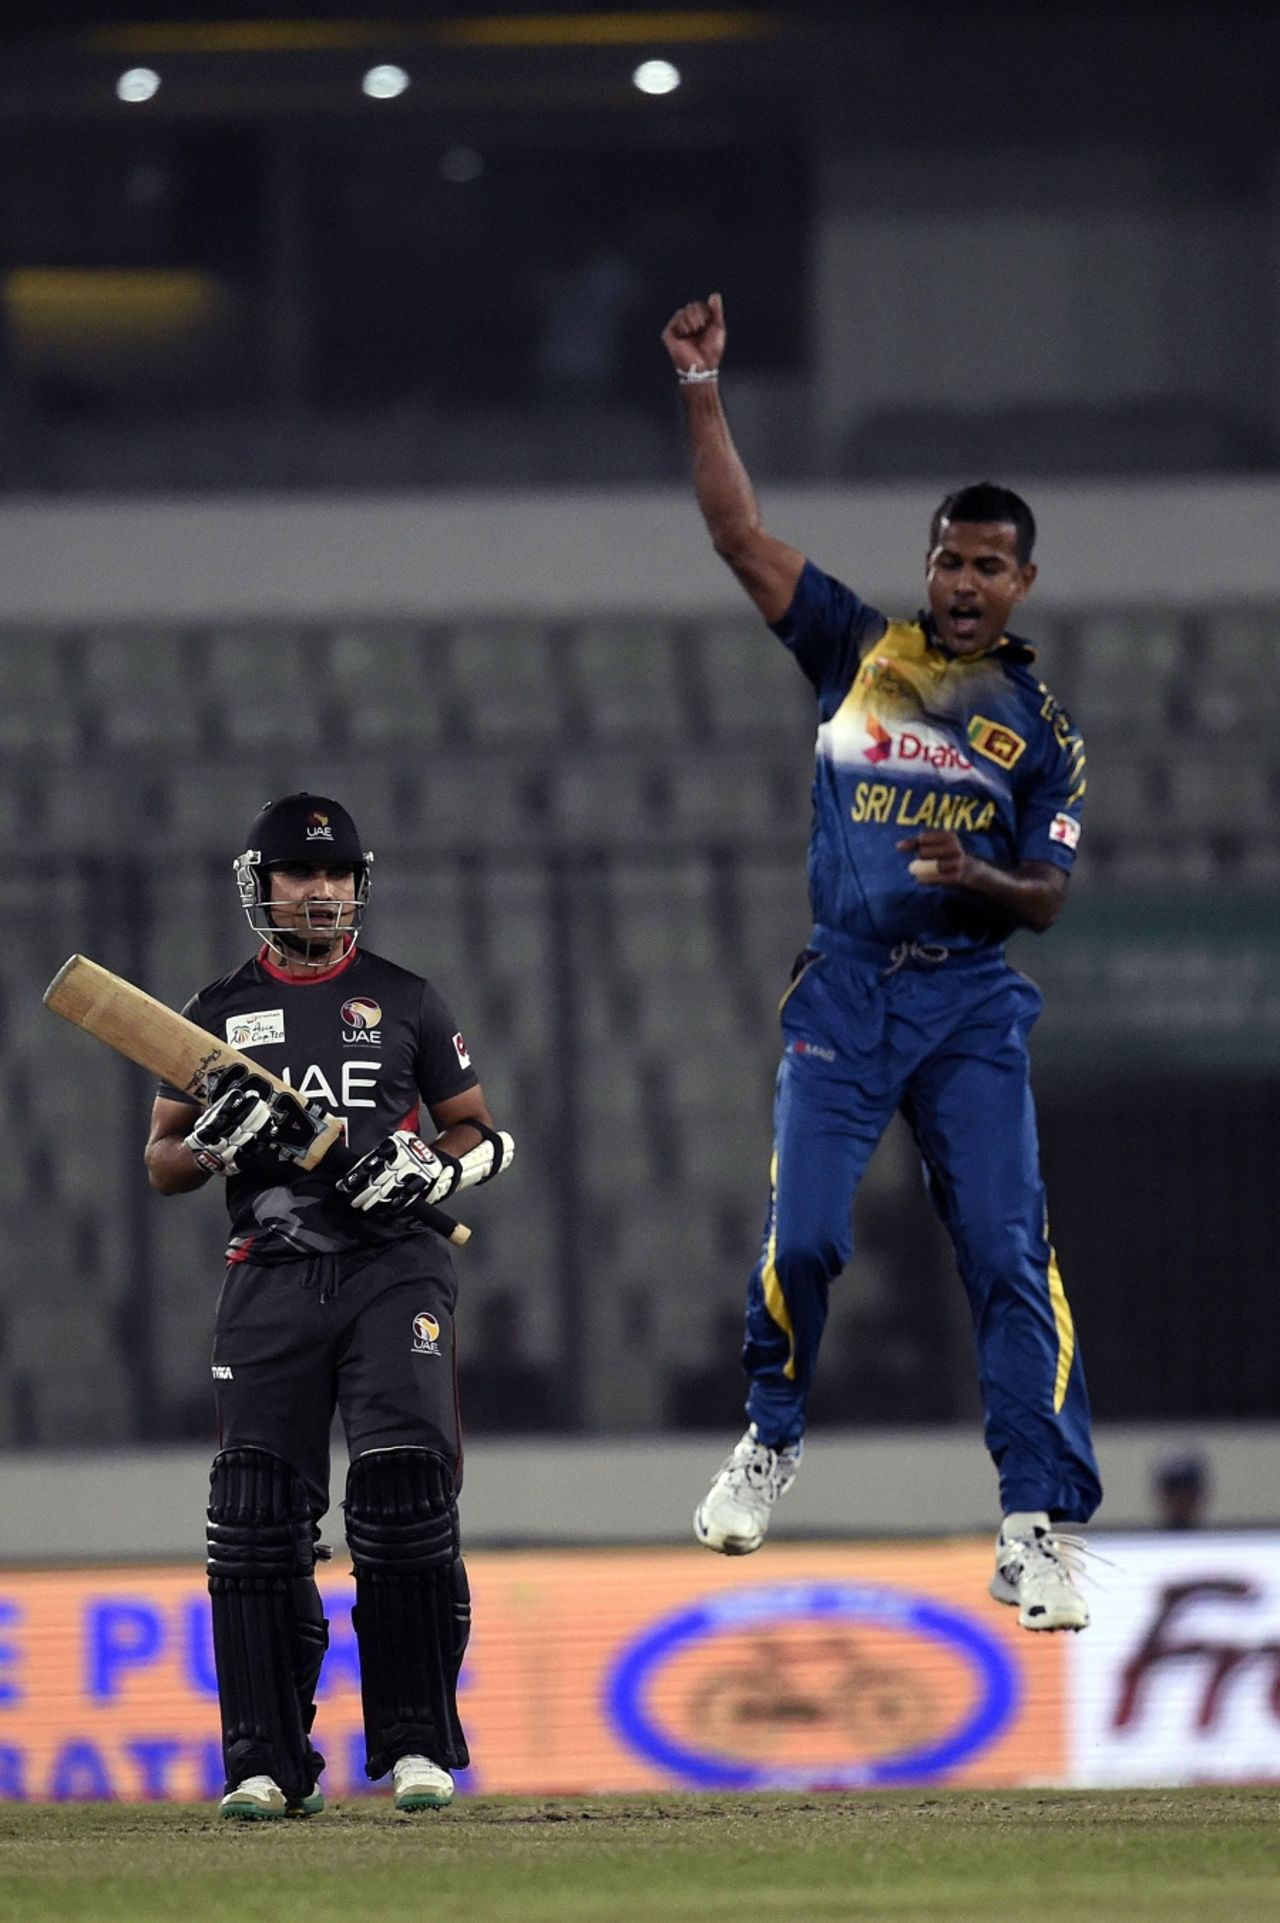 Nuwan Kulasekara celebrates a wicket, Sri Lanka v UAE, Asia Cup 2016, Mirpur, February 25, 2016